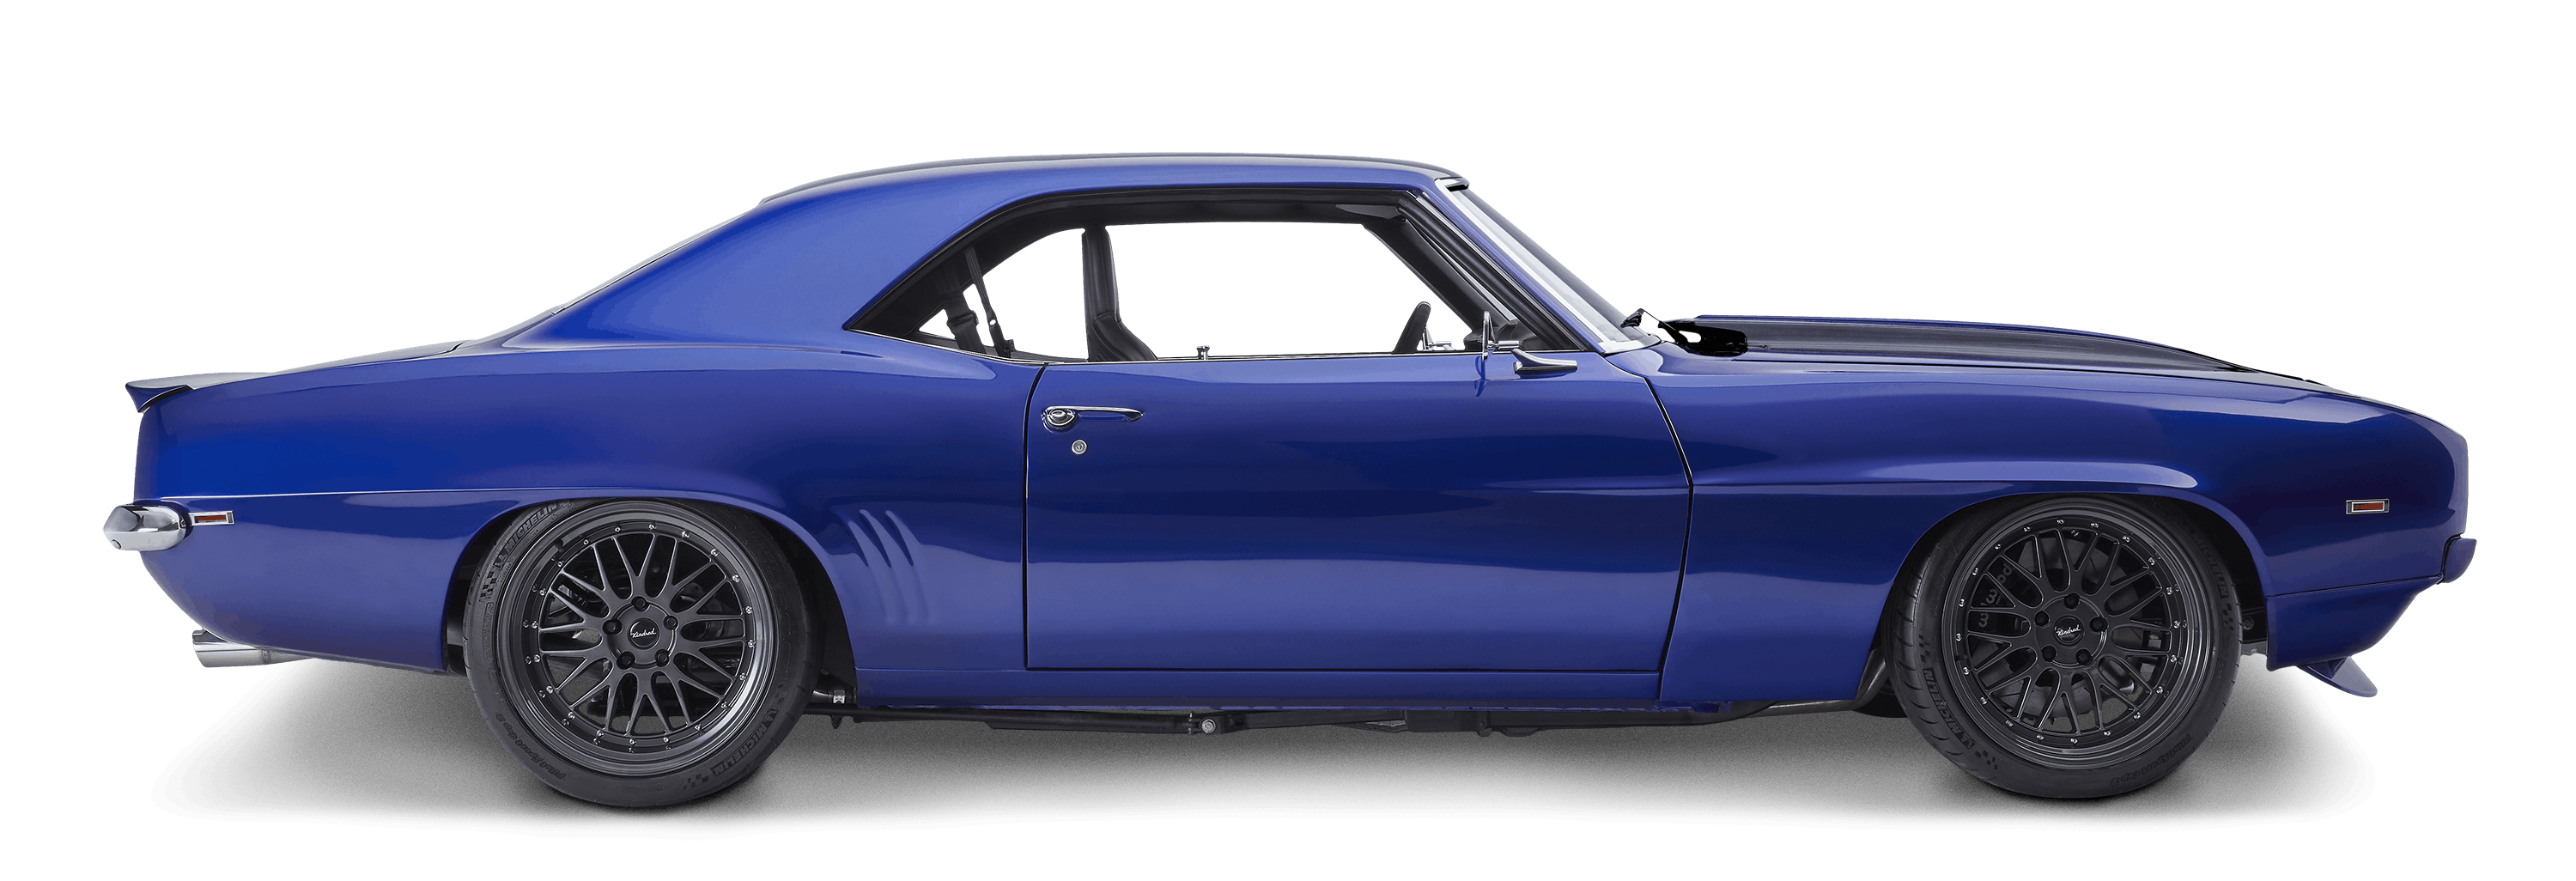 Camaro Profile Passenger v3